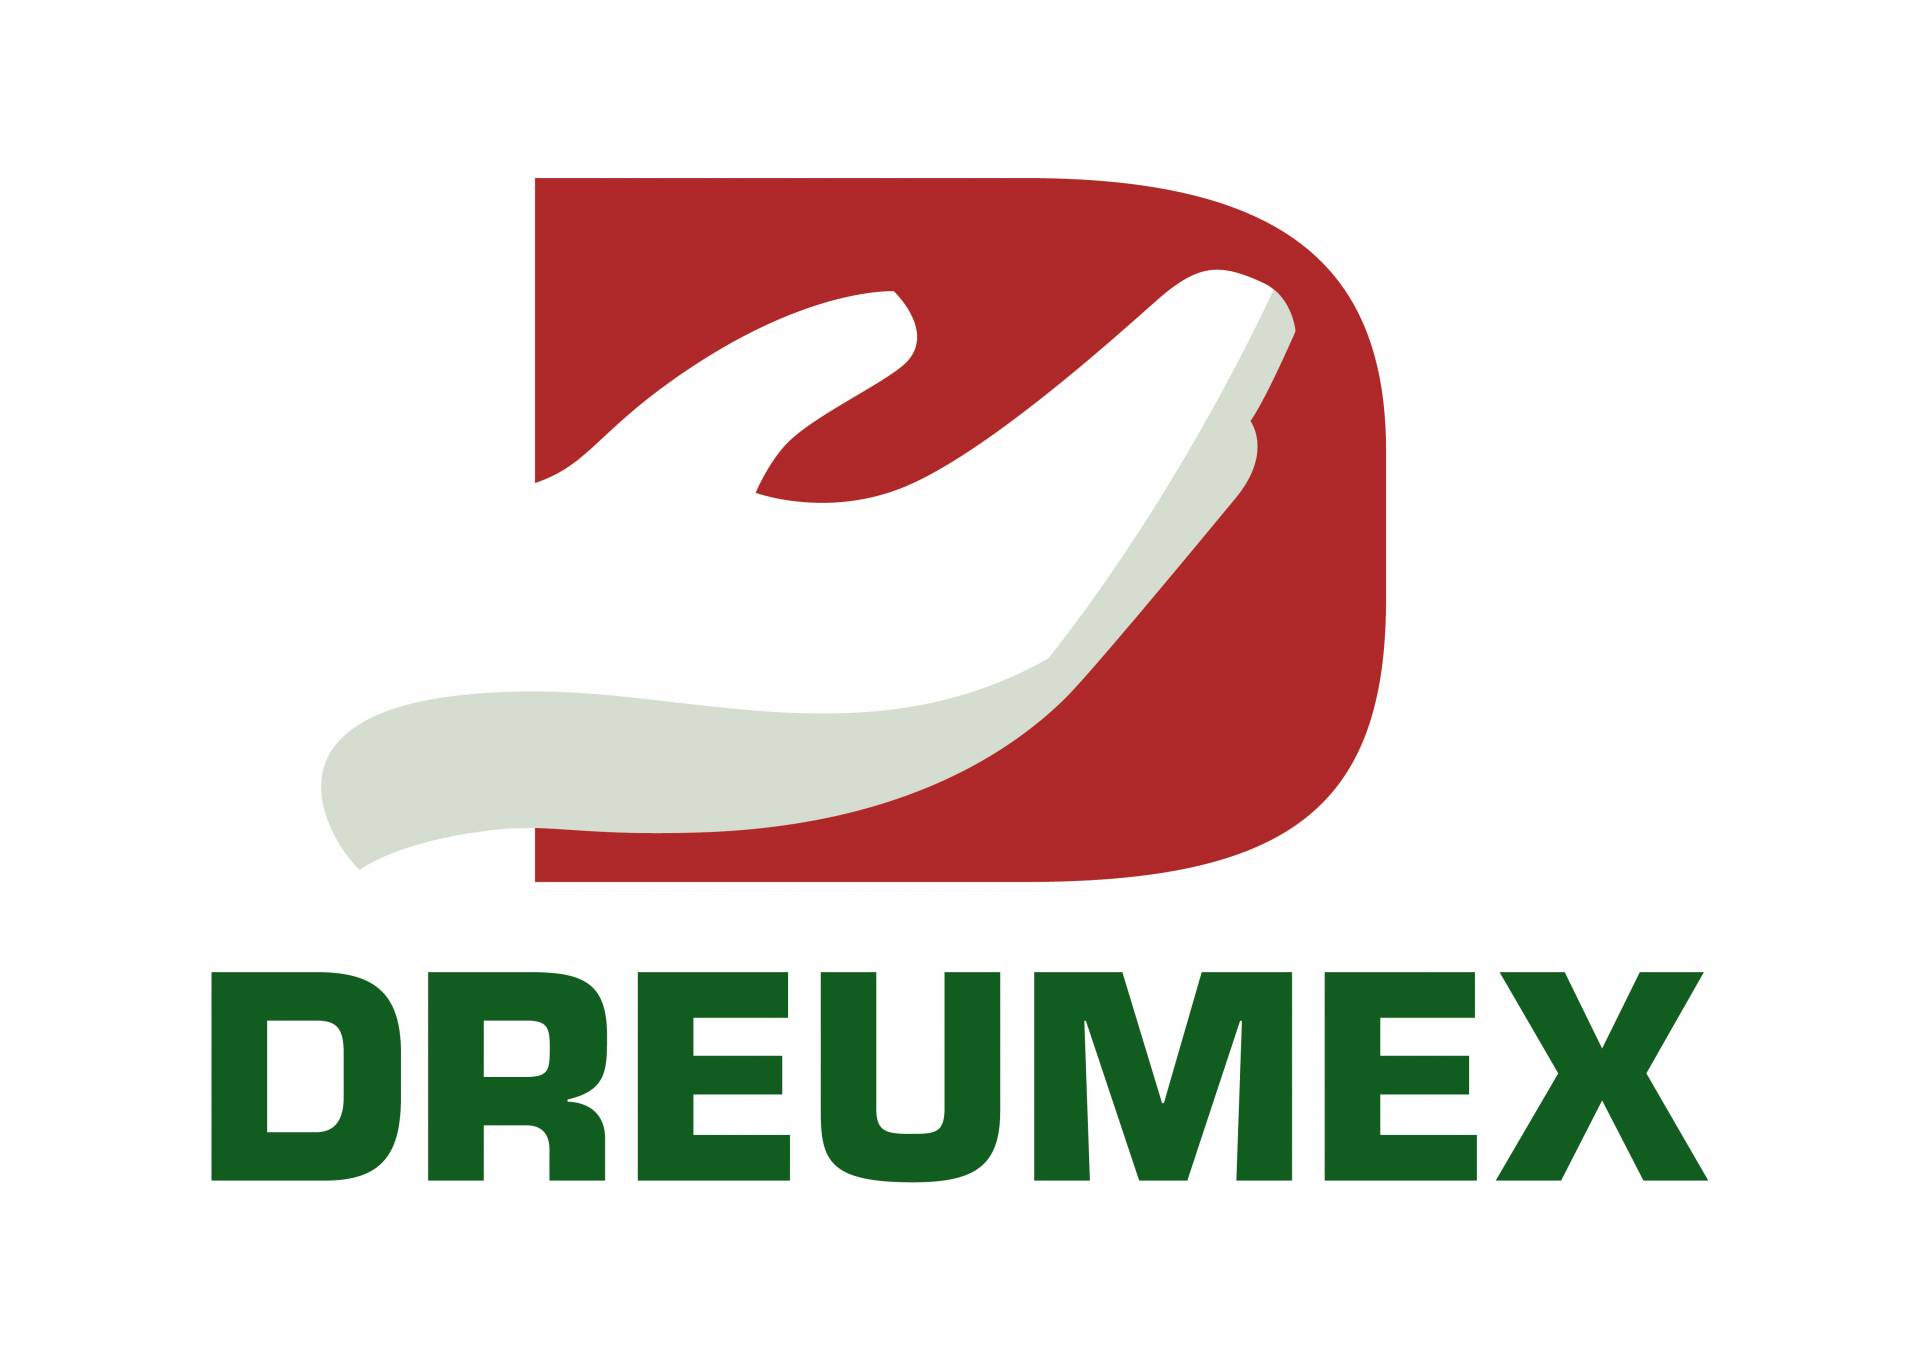 Dreumex expert wipes reinigingsdoeken badge